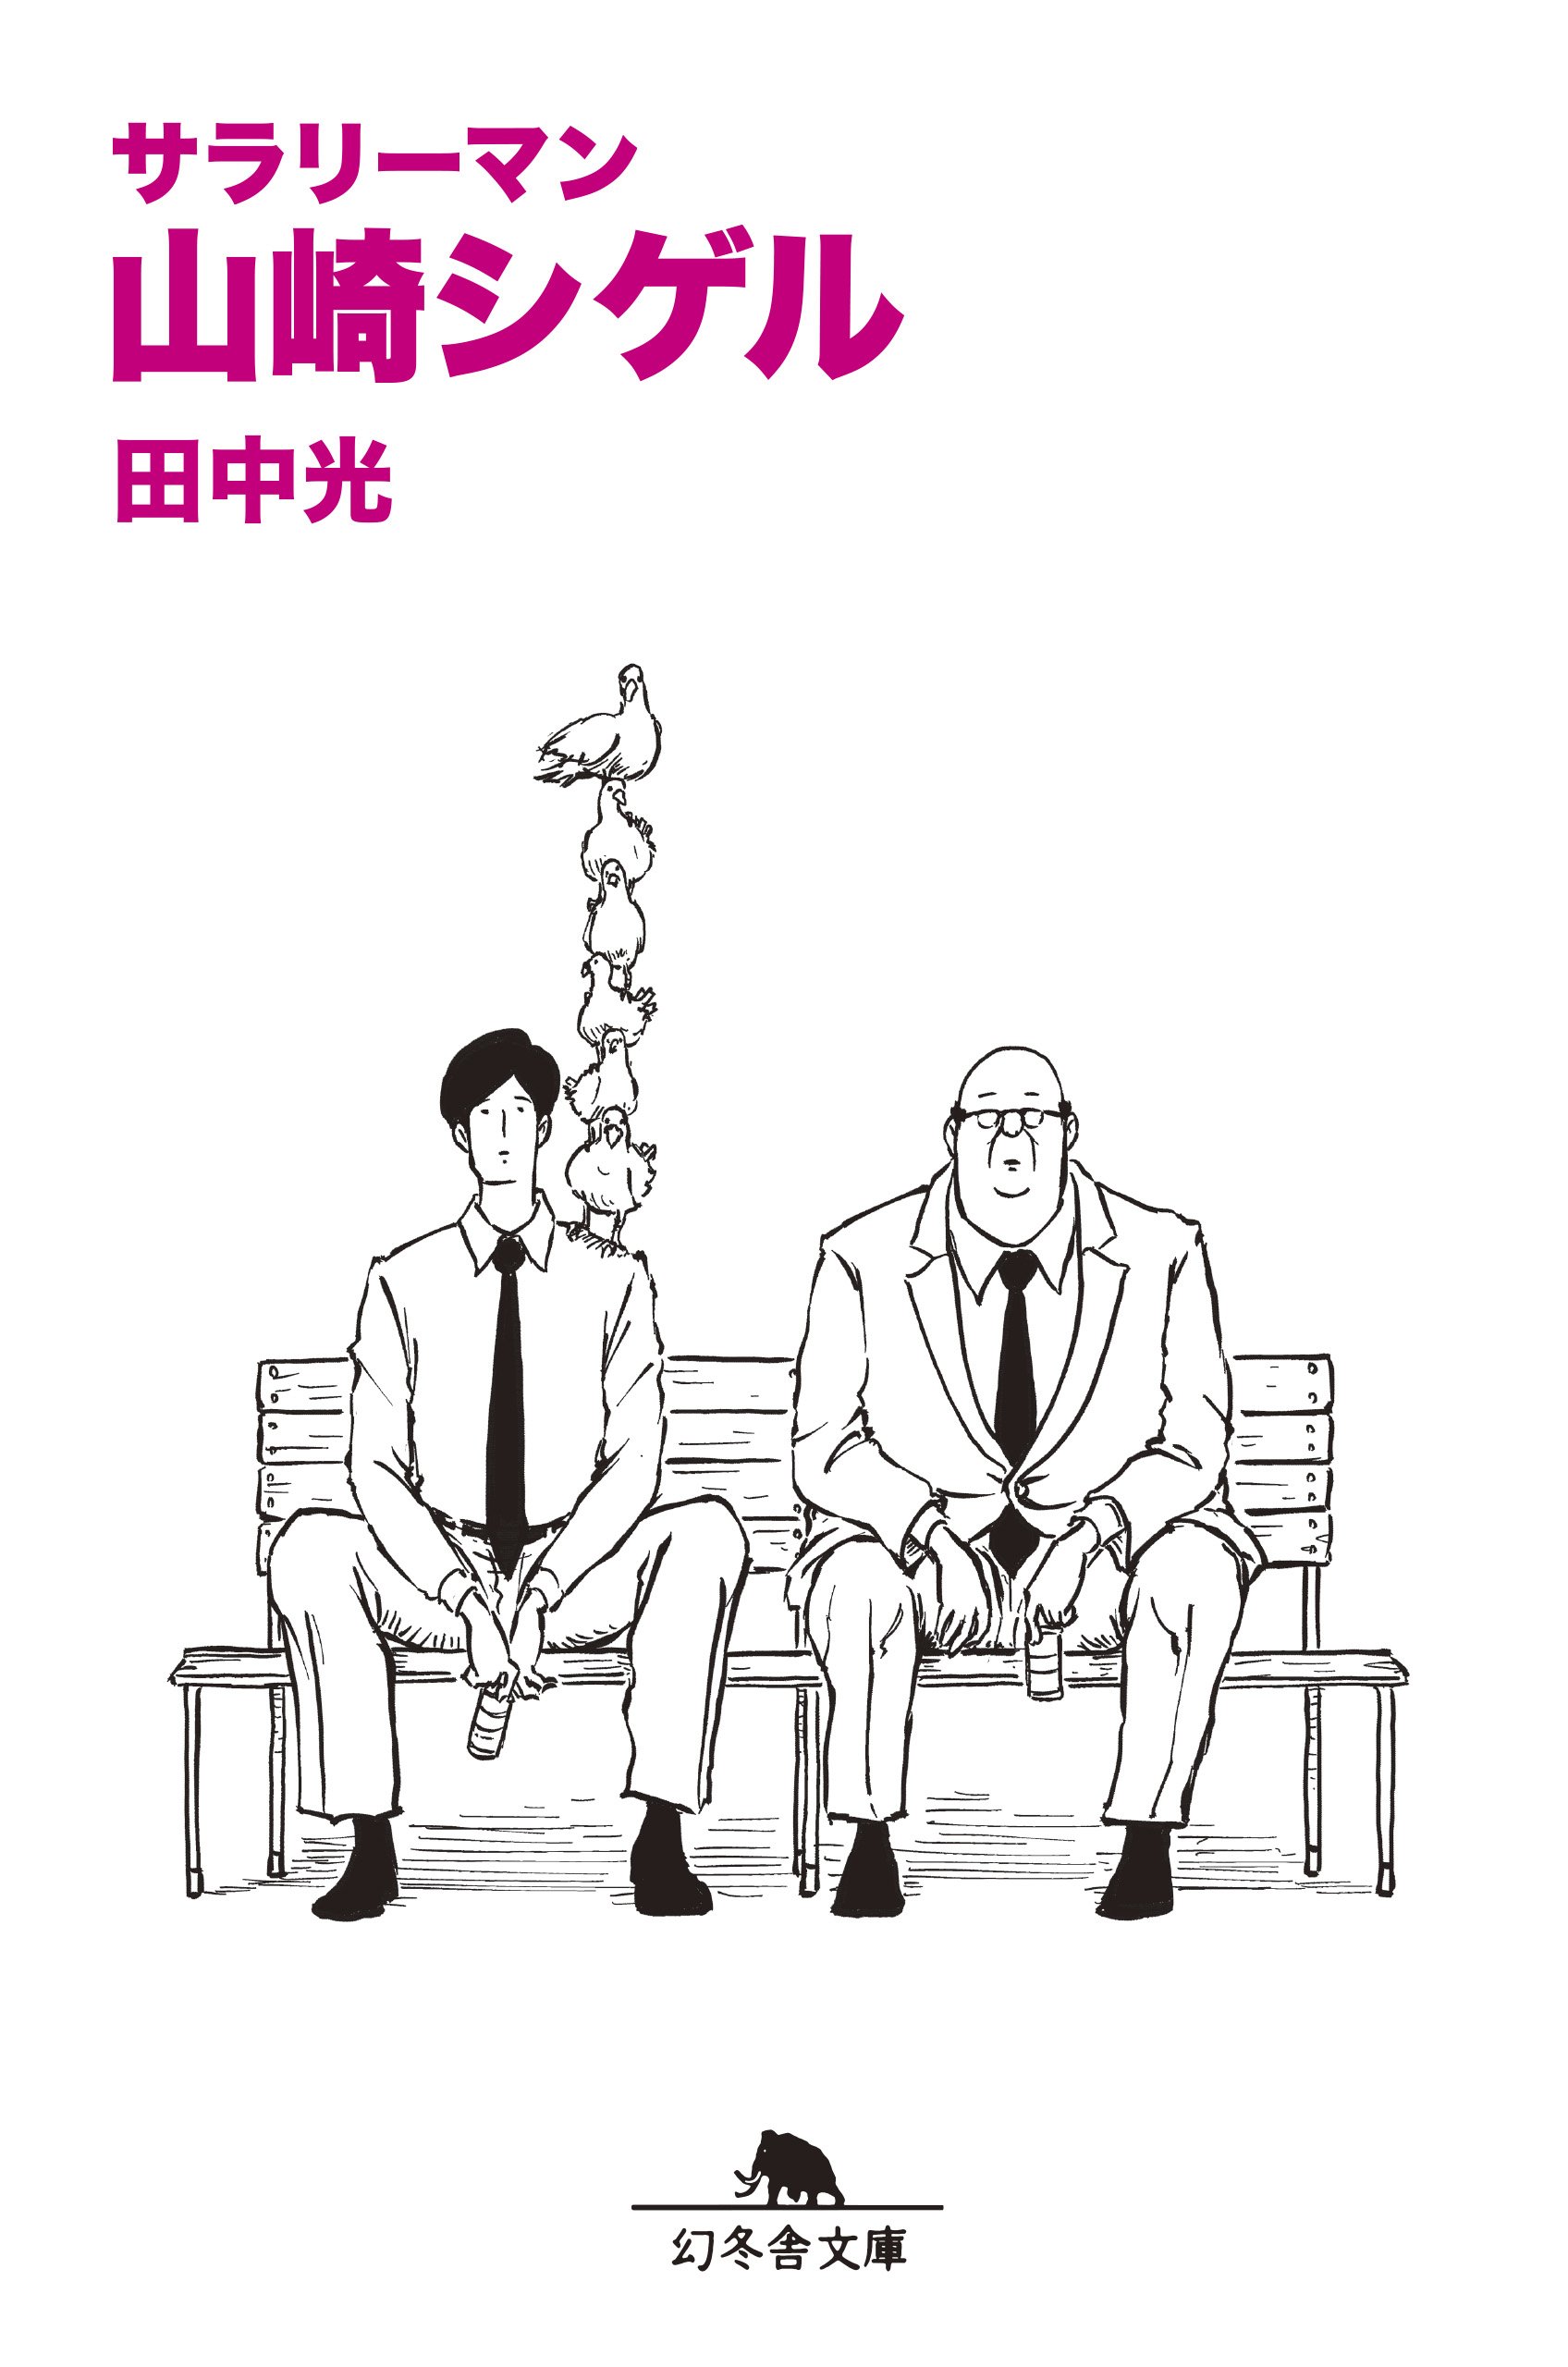 ピン芸人田中光のひとコマ漫画『サラリーマン山崎シゲル』のじわじわ笑える画像まとめ